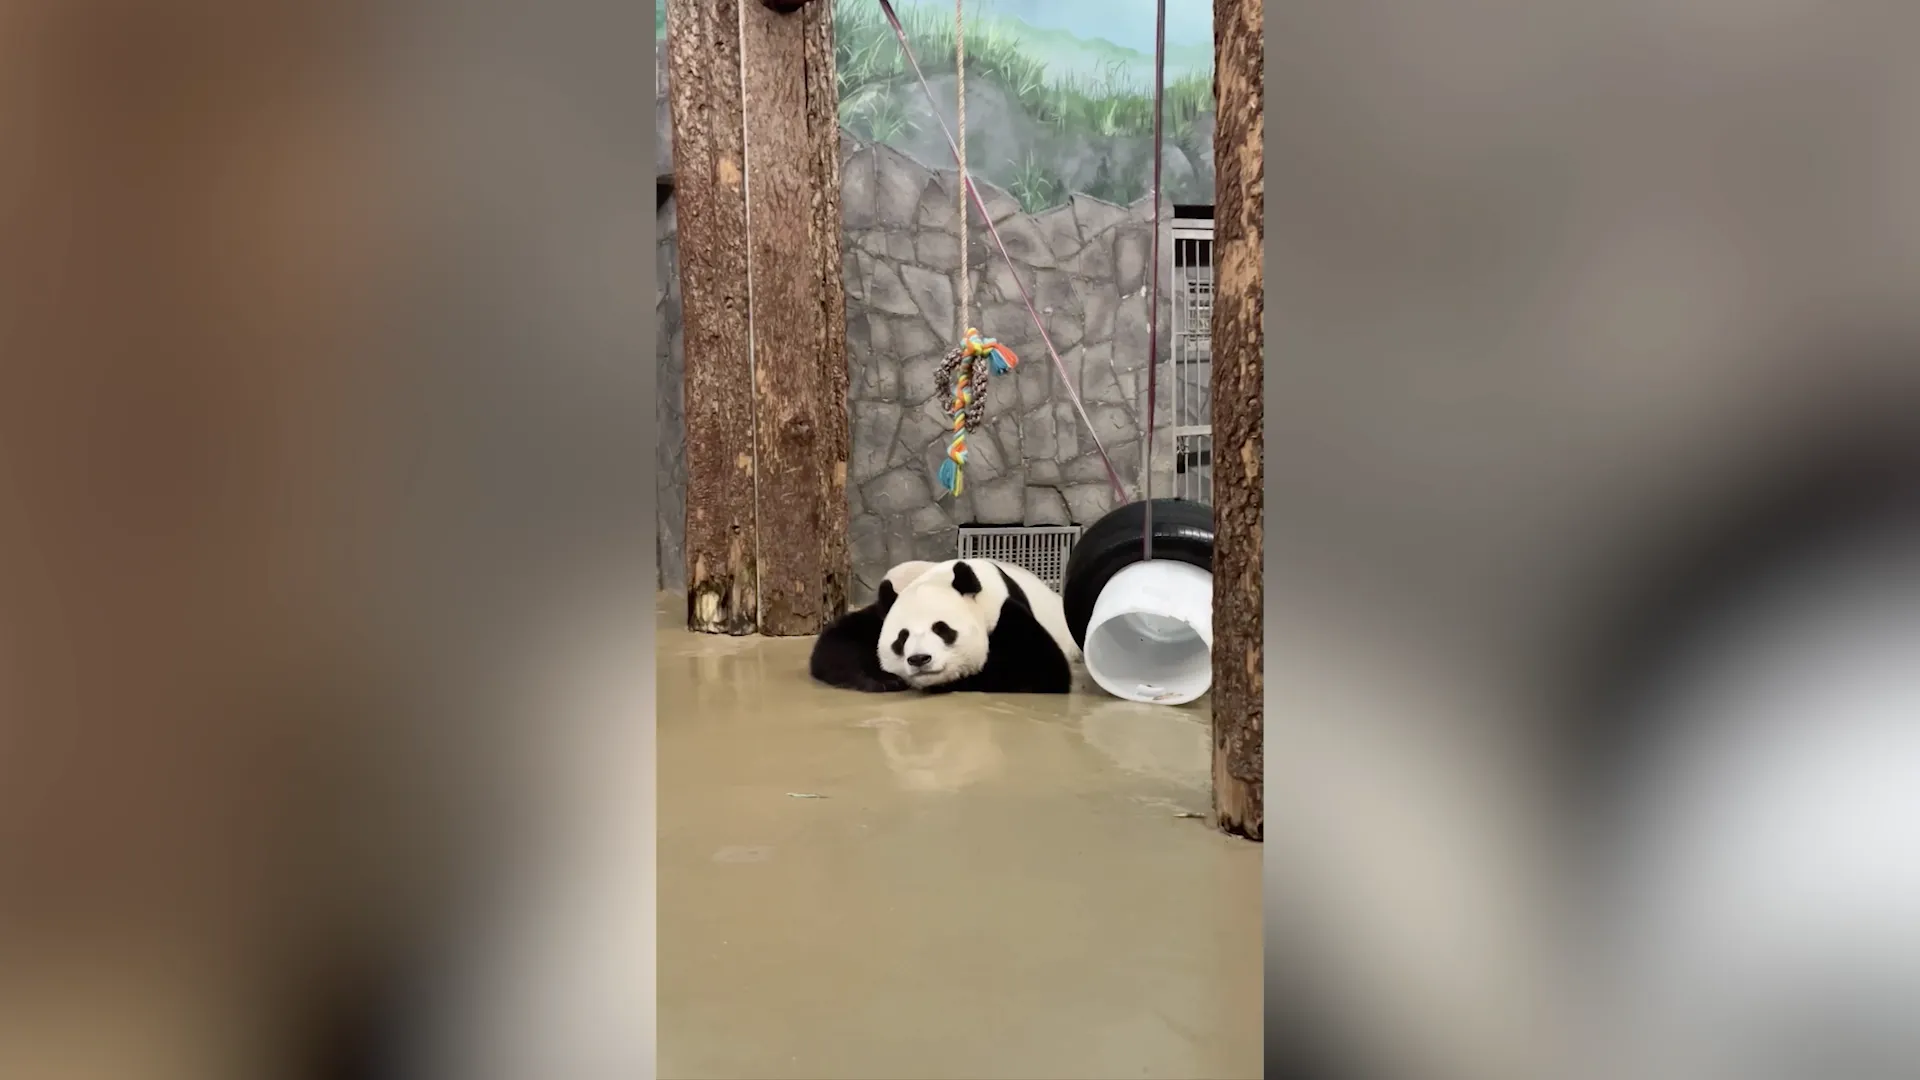 Появилось видео вечернего досуга панды Жуи, оно может вызвать приступ зависти